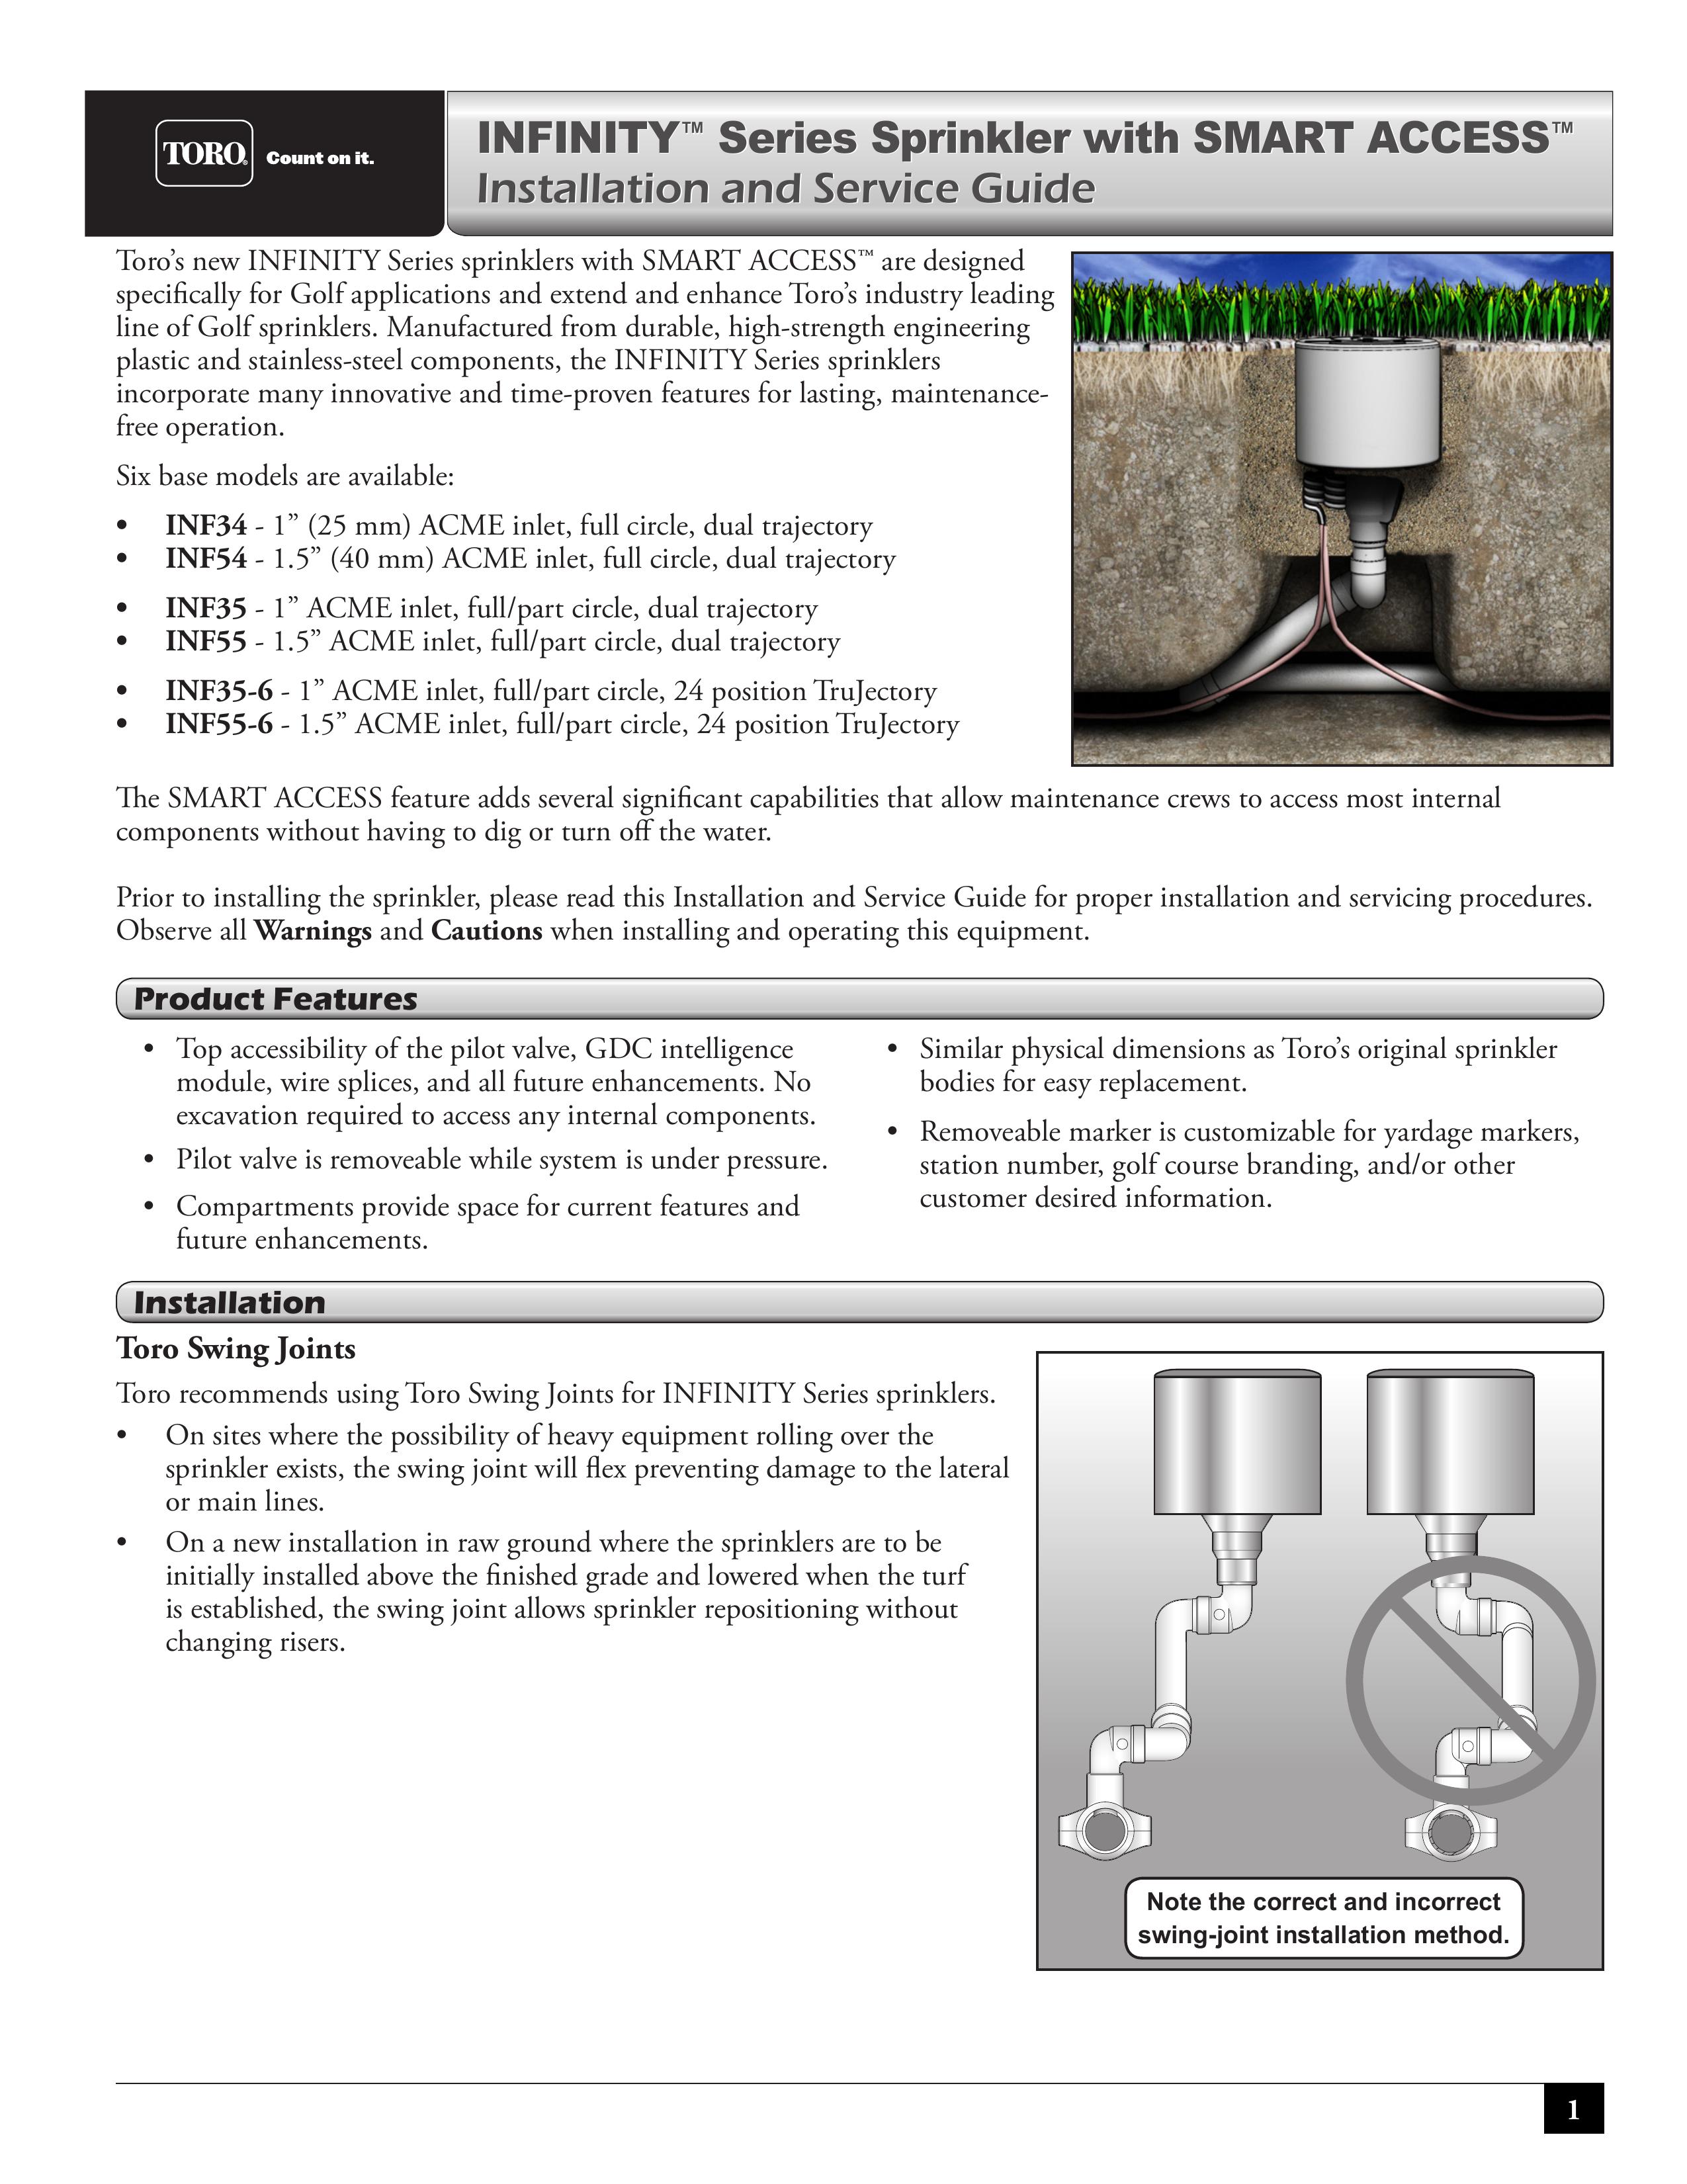 Toro INF55 Sprinkler User Manual